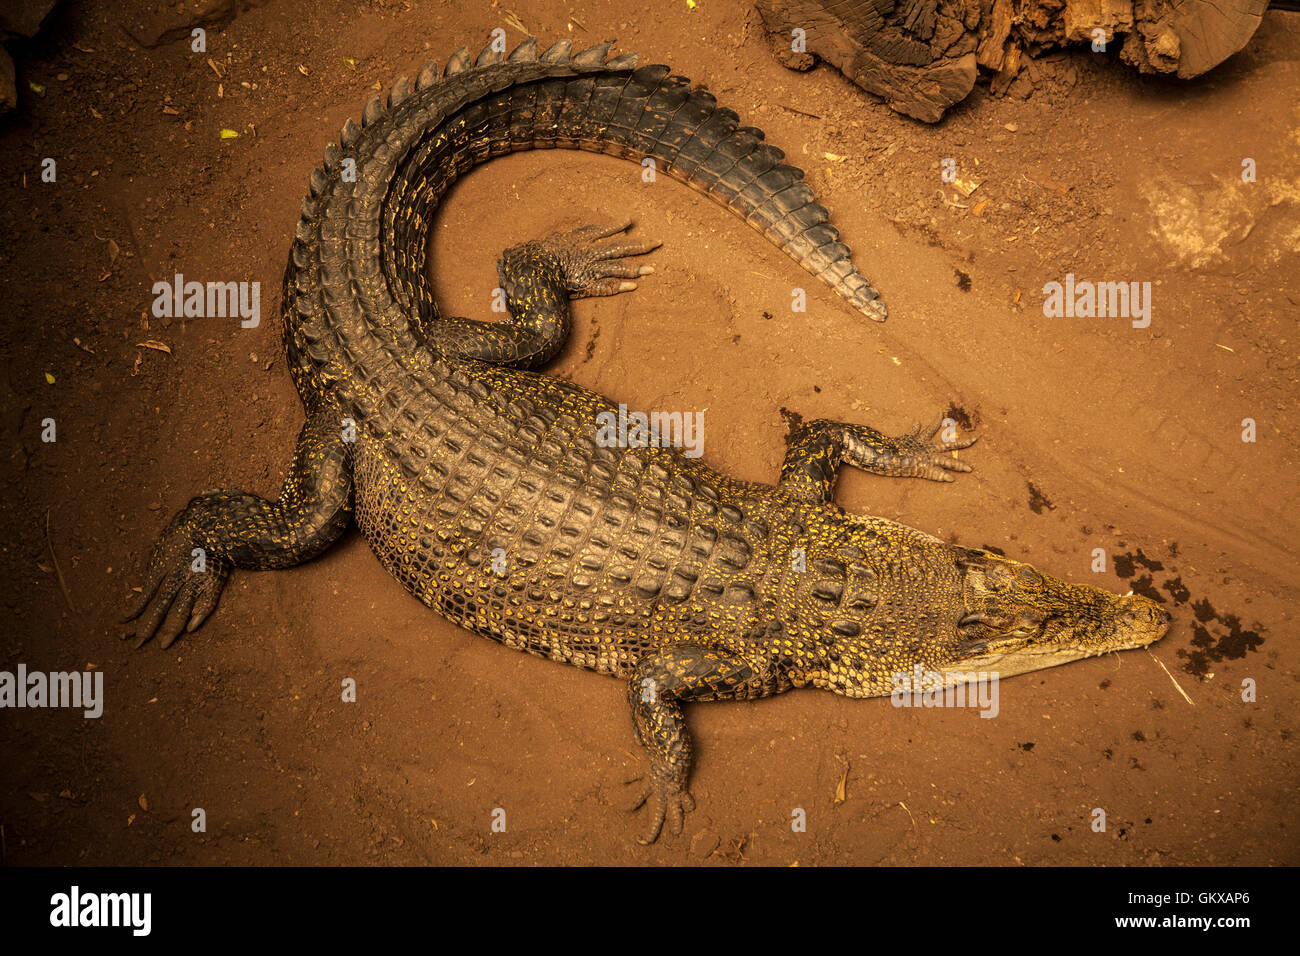 Riesige Salzwasser Krokodil von oben - von oben nach unten Blick auf das Krokodil auf nassem Sand Strand Stockfoto